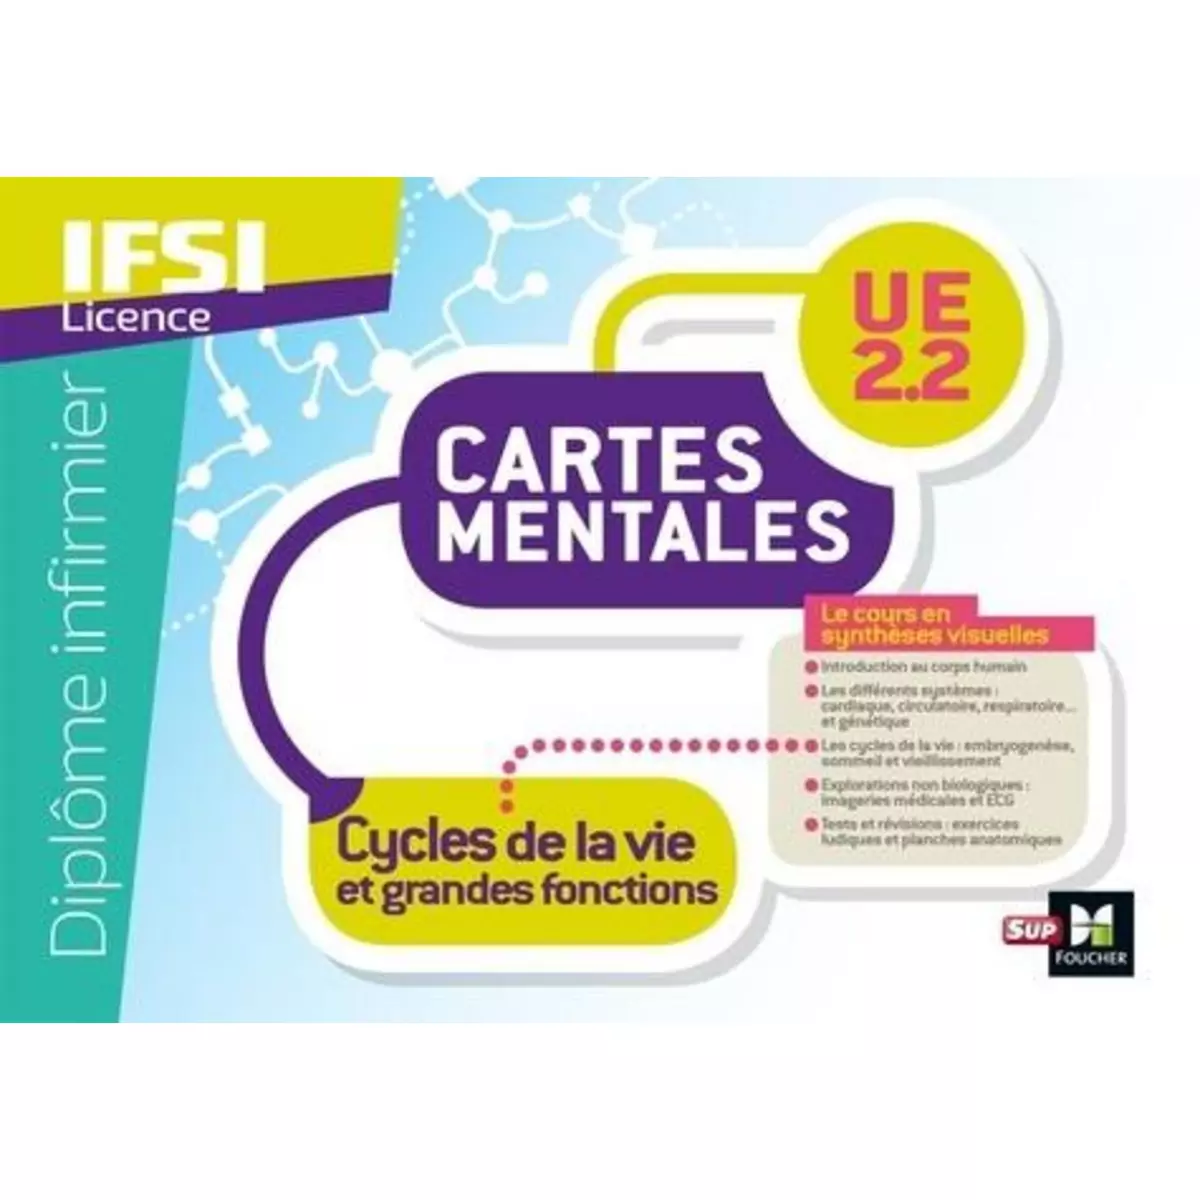  IFSI LICENCE. CARTES MENTALES UE 2.2 CYCLES DE LA VIE ET GRANDES FONCTIONS, Faure Sandrine